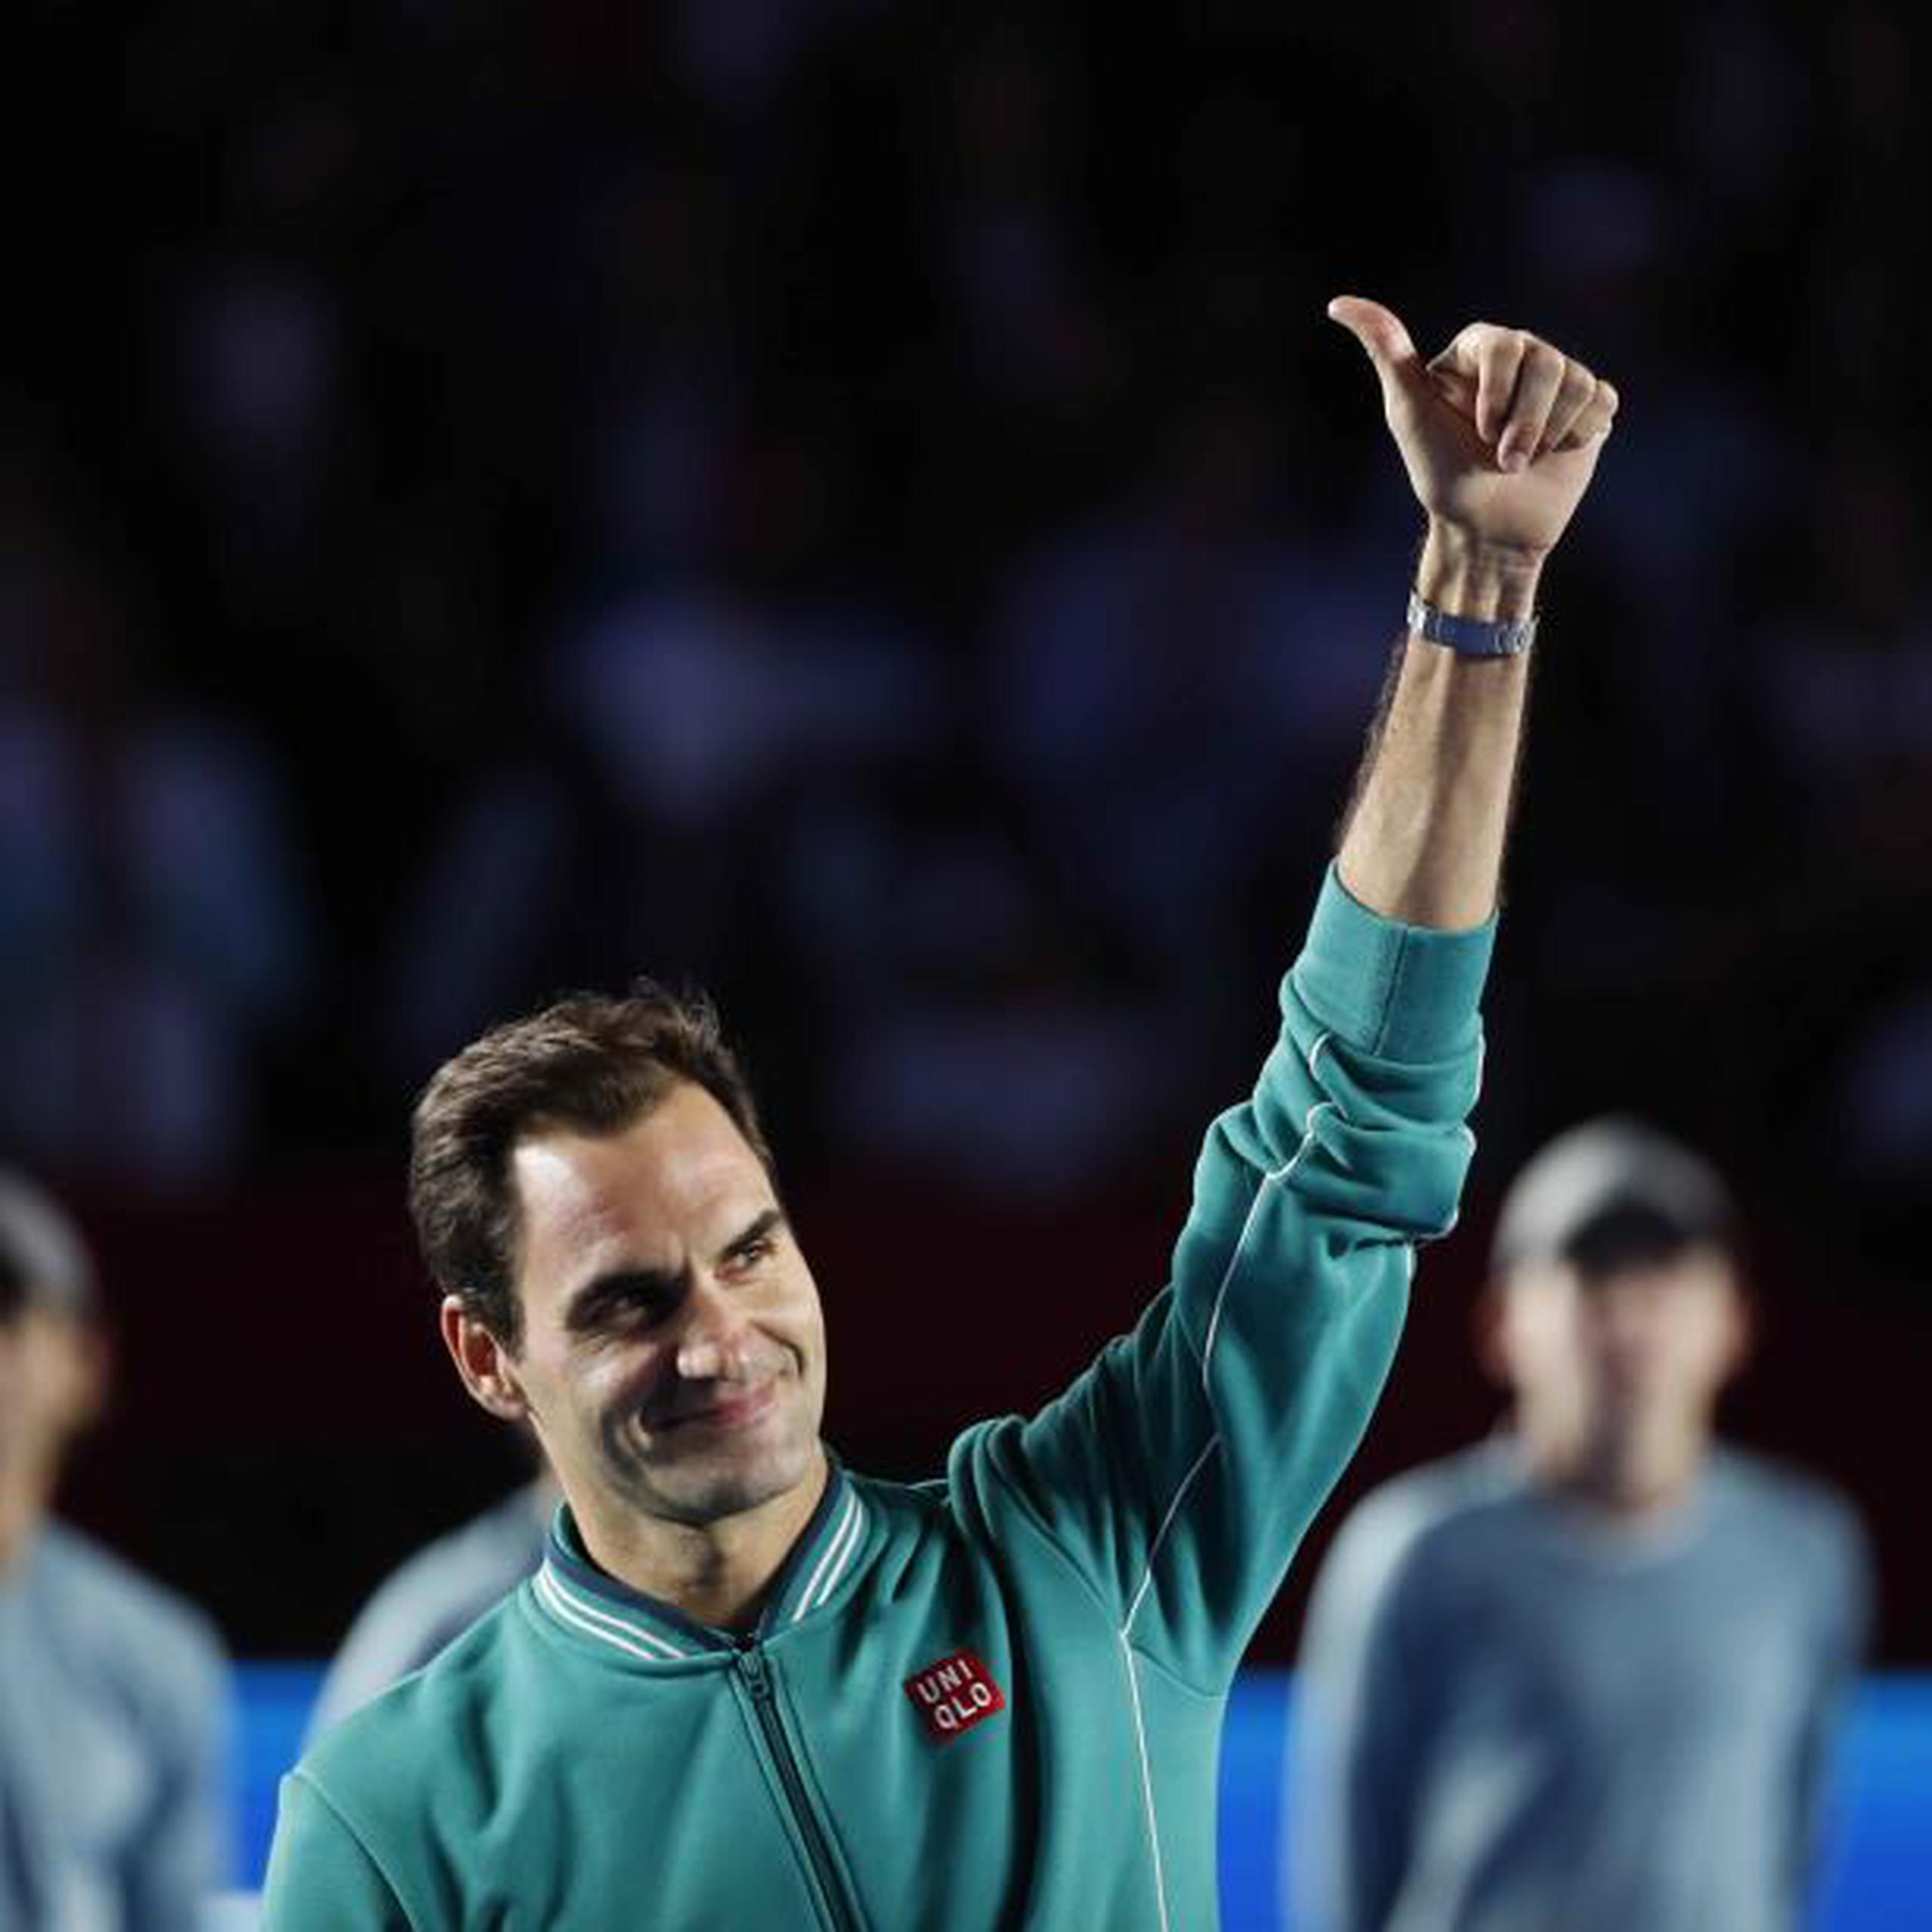 El suizo Roger Federer ha ganado 20 títulos de Grand Slam. (EFE)